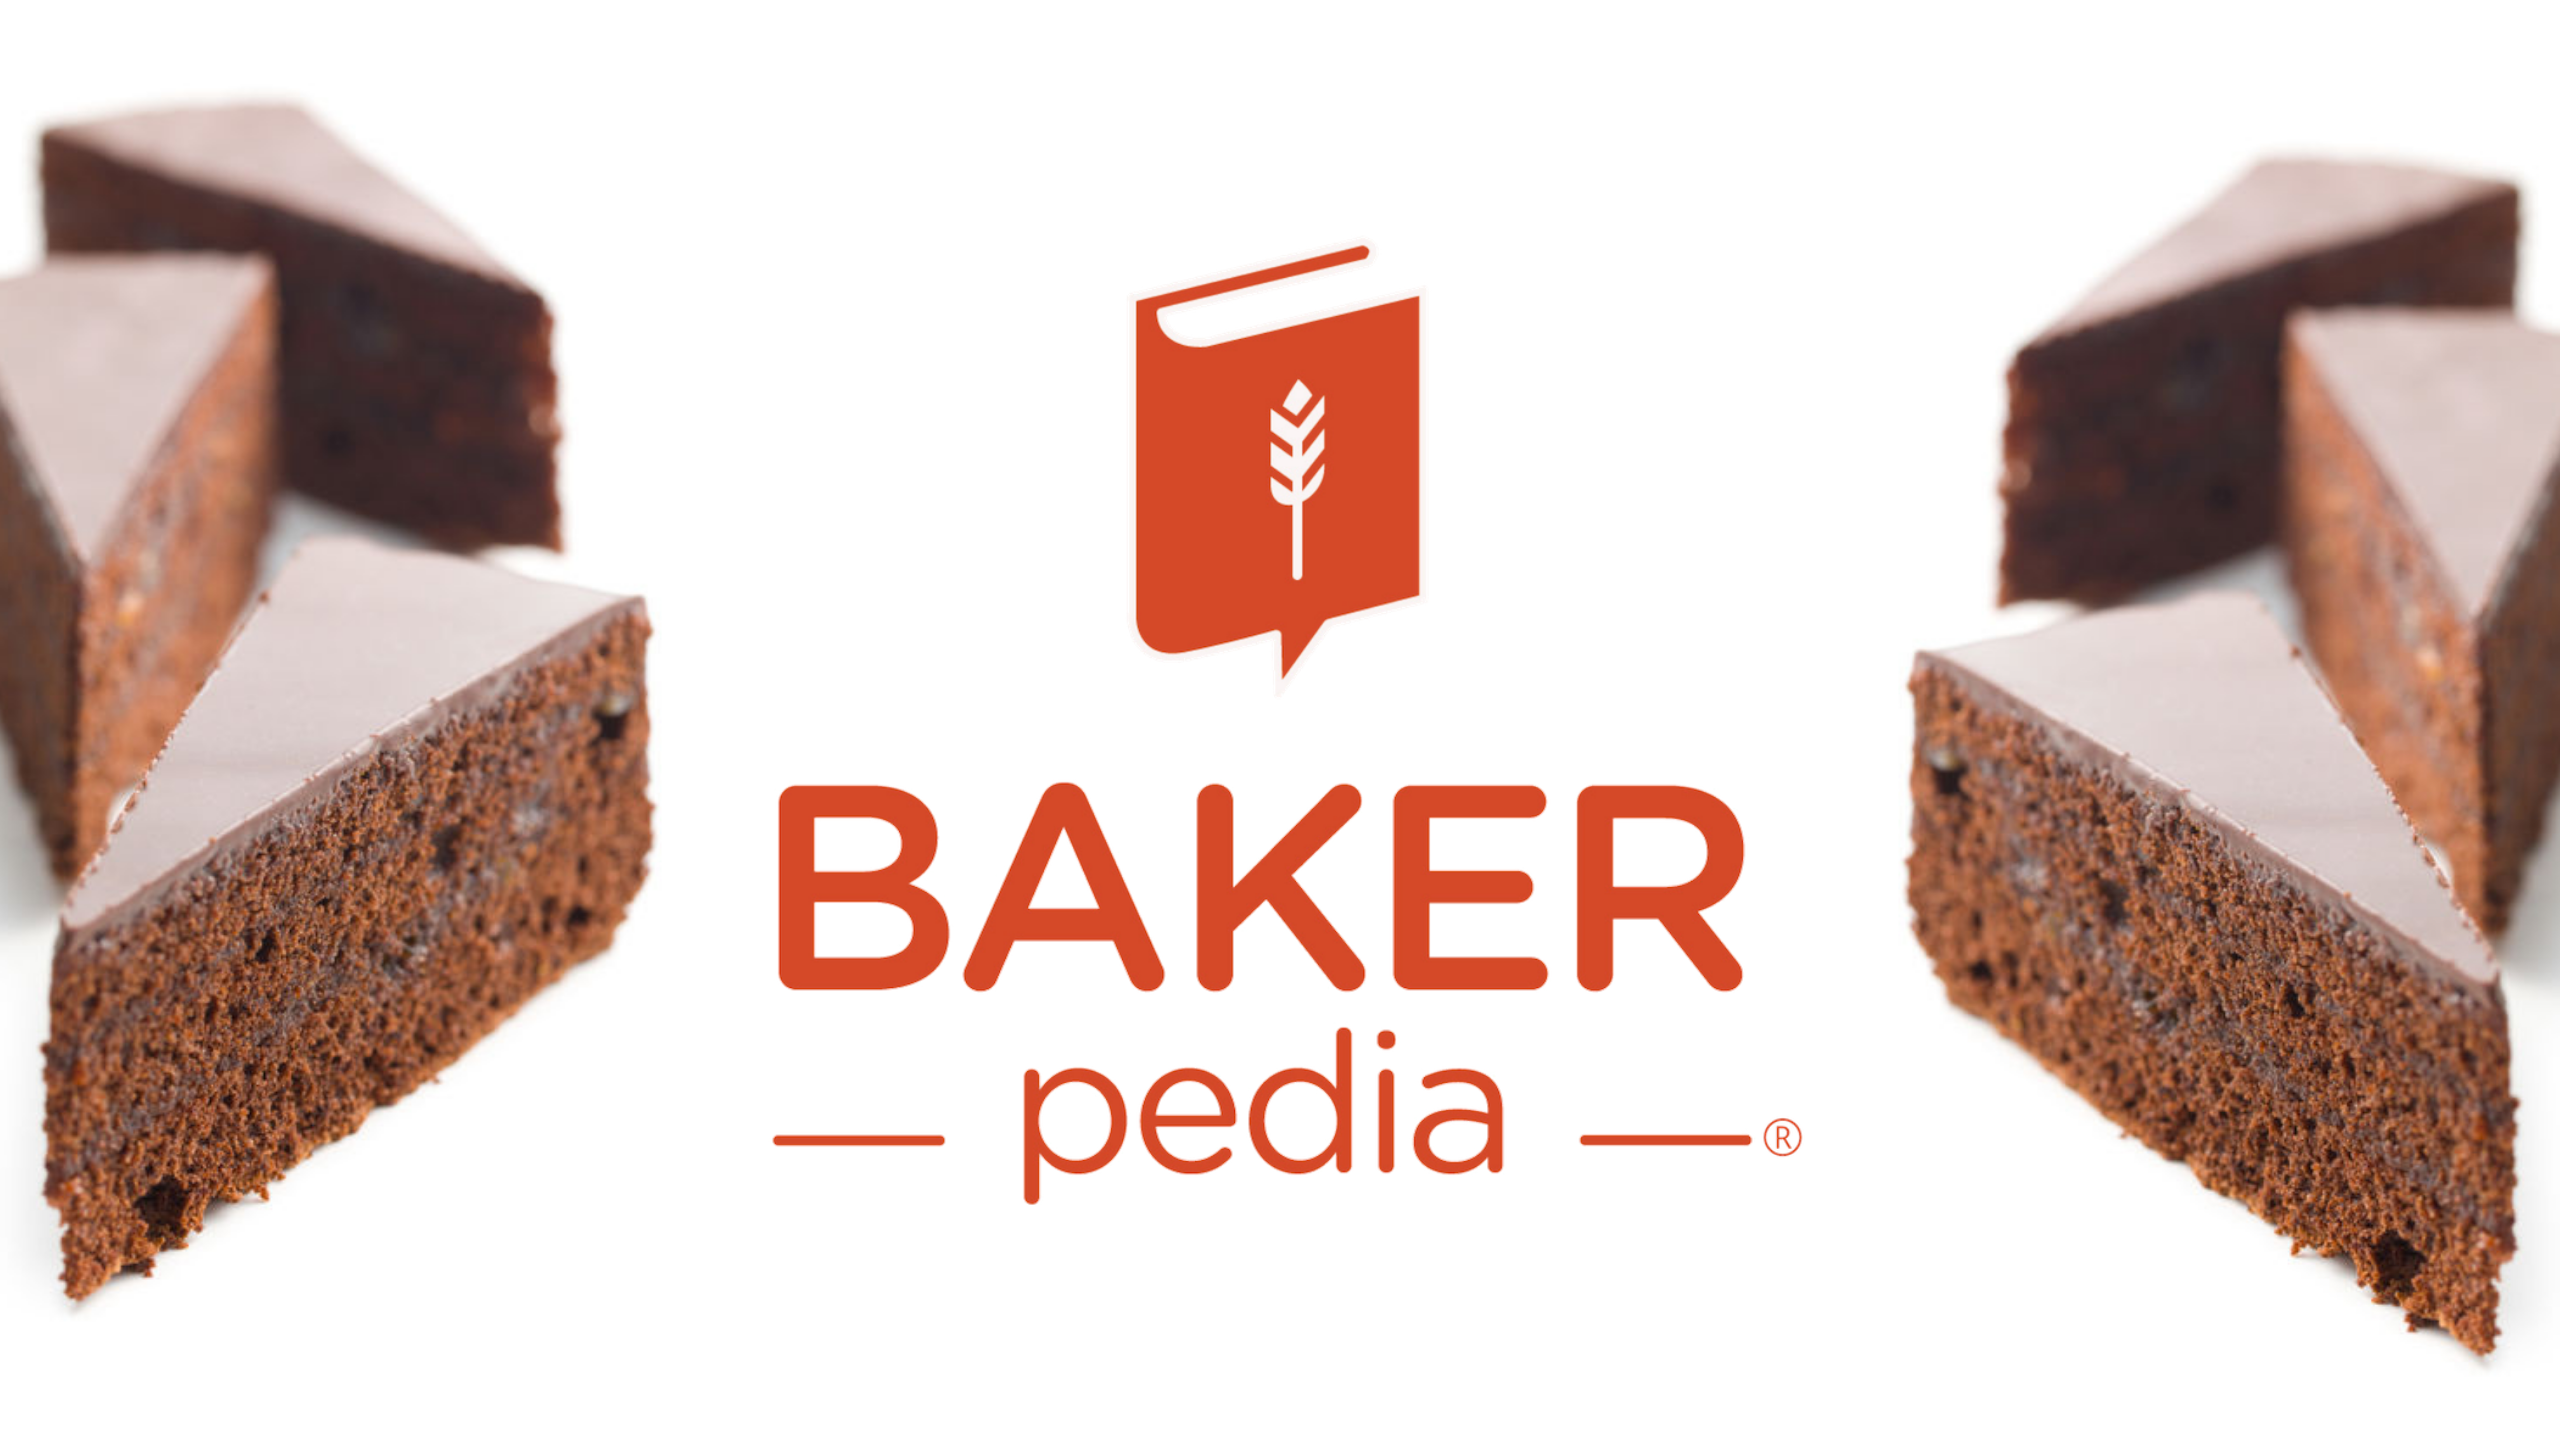 Chia sẻ kiến thức trên BAKERpedia là đơn giản và hoàn toàn miễn phí. Với những thông tin hữu ích và tiện ích về nghề bánh mì, bạn có thể trau dồi kiến thức và kỹ năng của mình một cách dễ dàng. Hãy xem hình ảnh để khám phá cơ hội học tập mới này.